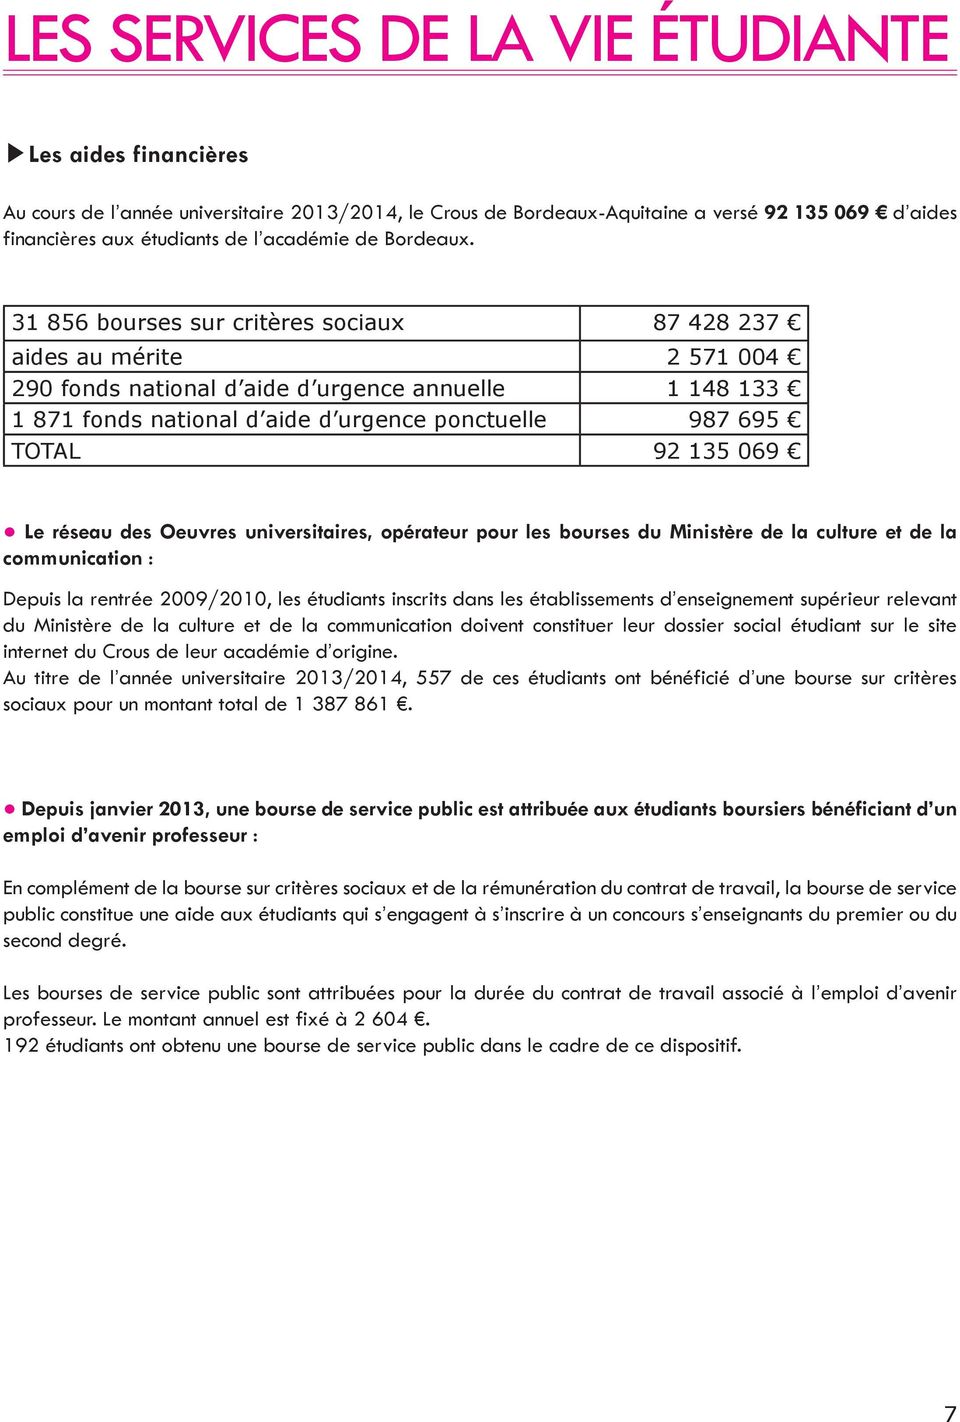 Appart Dating Bordeaux 2013 problèmes de datation INFP